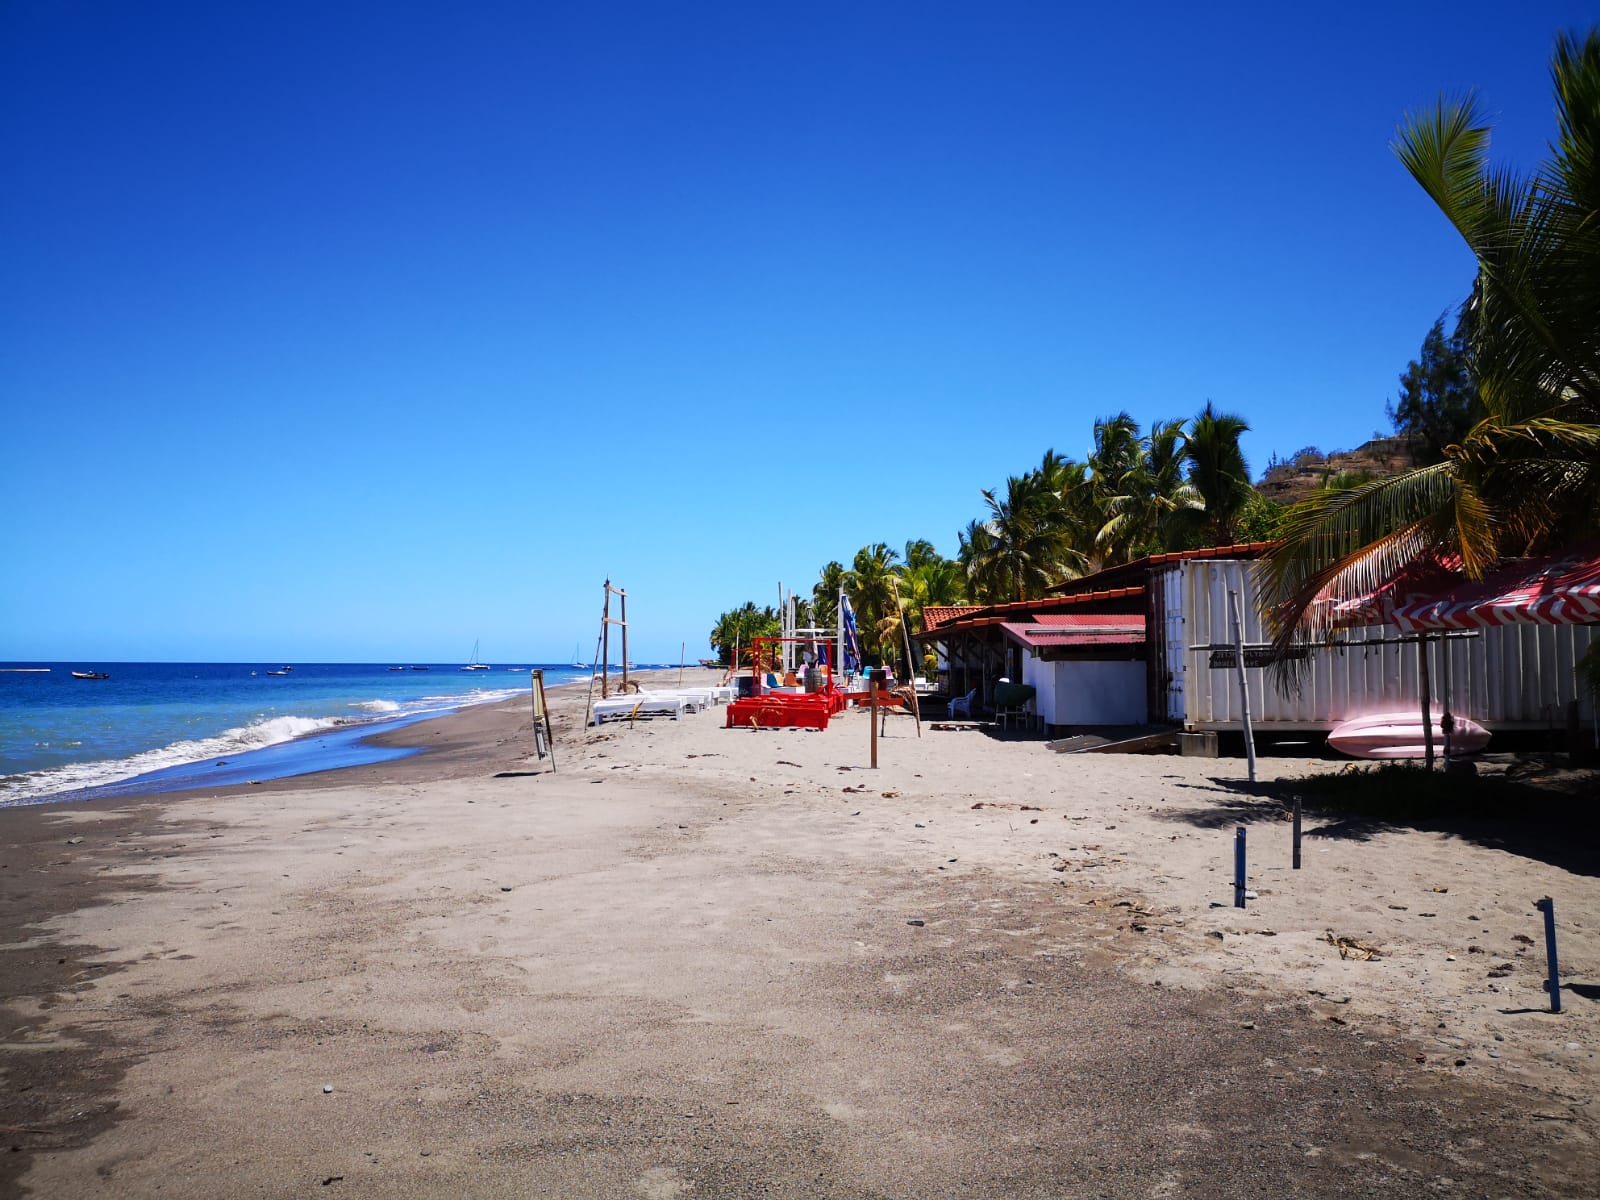     Le préfet autorise l'accès aux plages de Martinique et la navigation de plaisance

